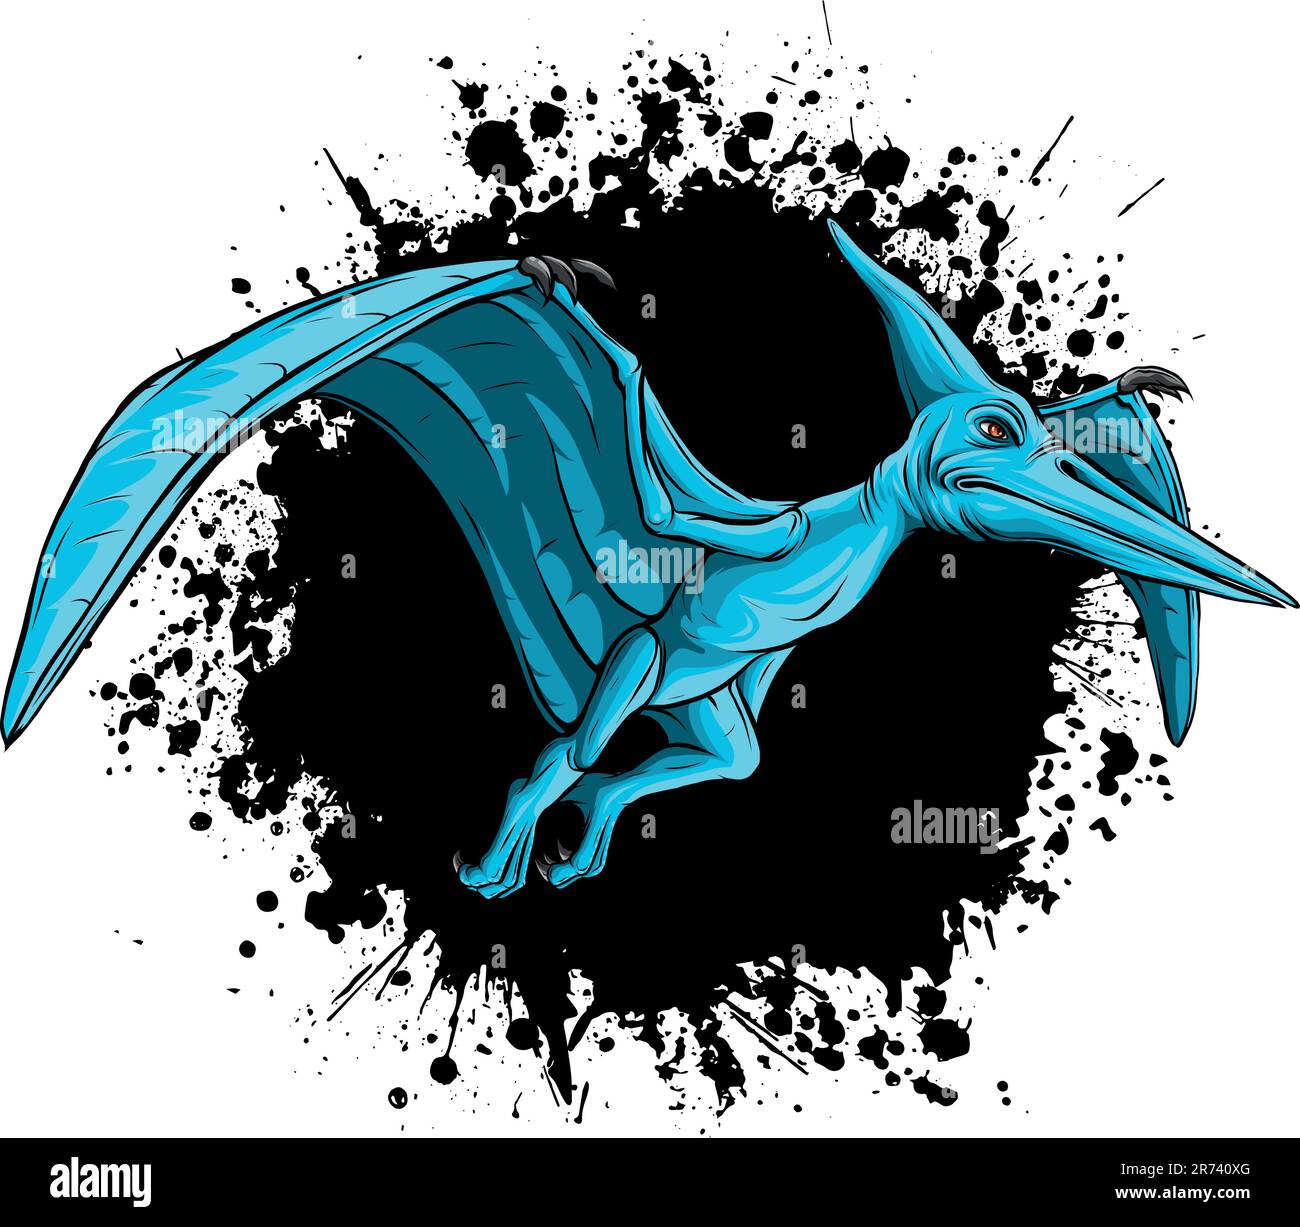 Vector illustration of a Pteranodon flying dinosaur. Stock Vector